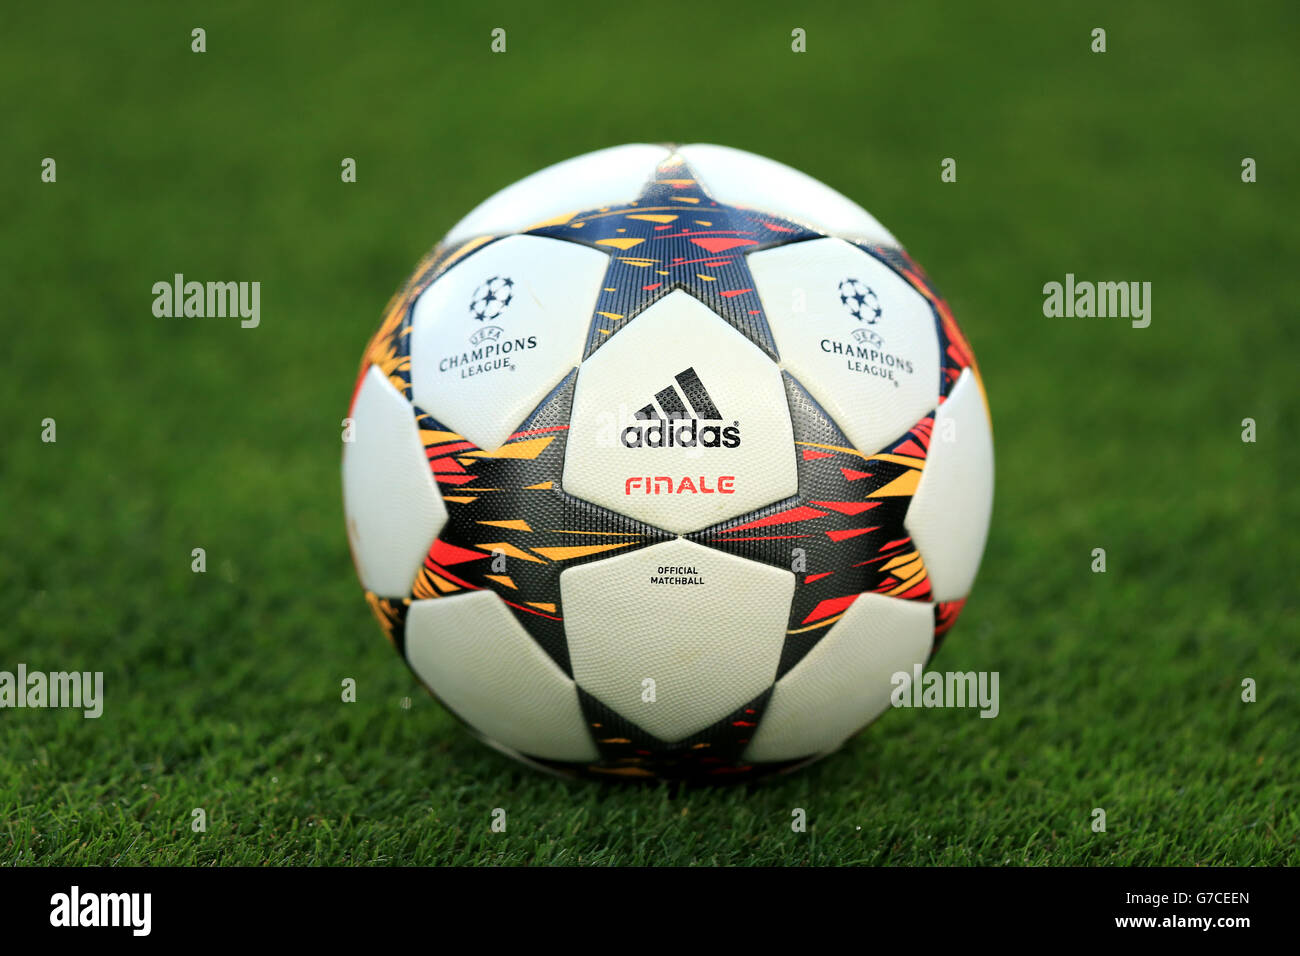 Champions League jogo entre APOEL VS Tottenham Hotspur — Fotografia de  Stock Editorial © vverve #168847238